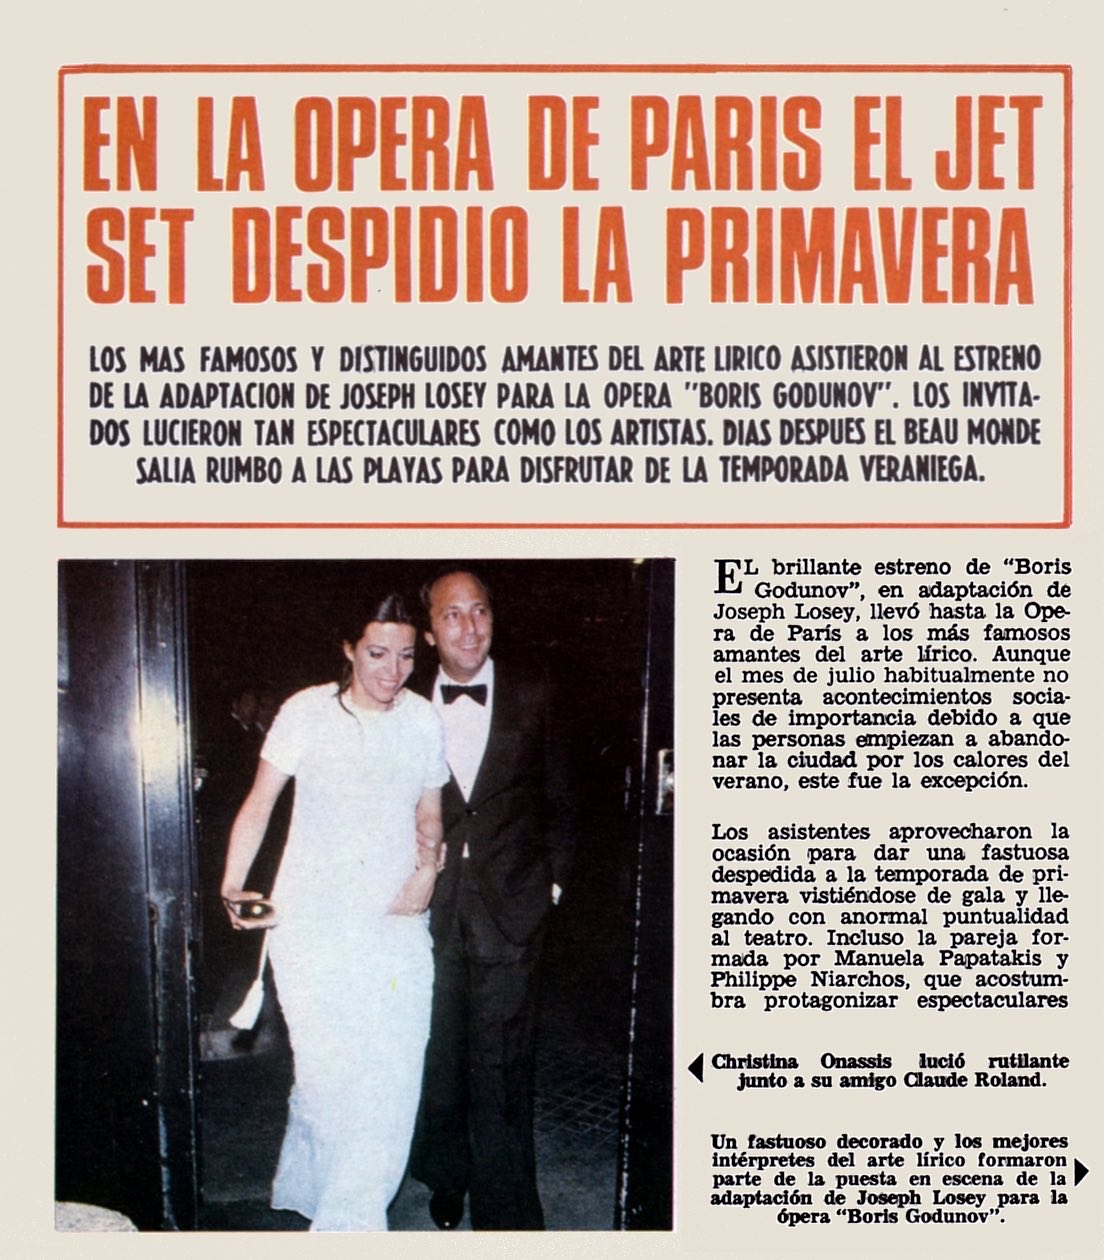 Article "Hola" (Espagne)" En la Opera de Paris el jetset despidio a la primavera" 1980